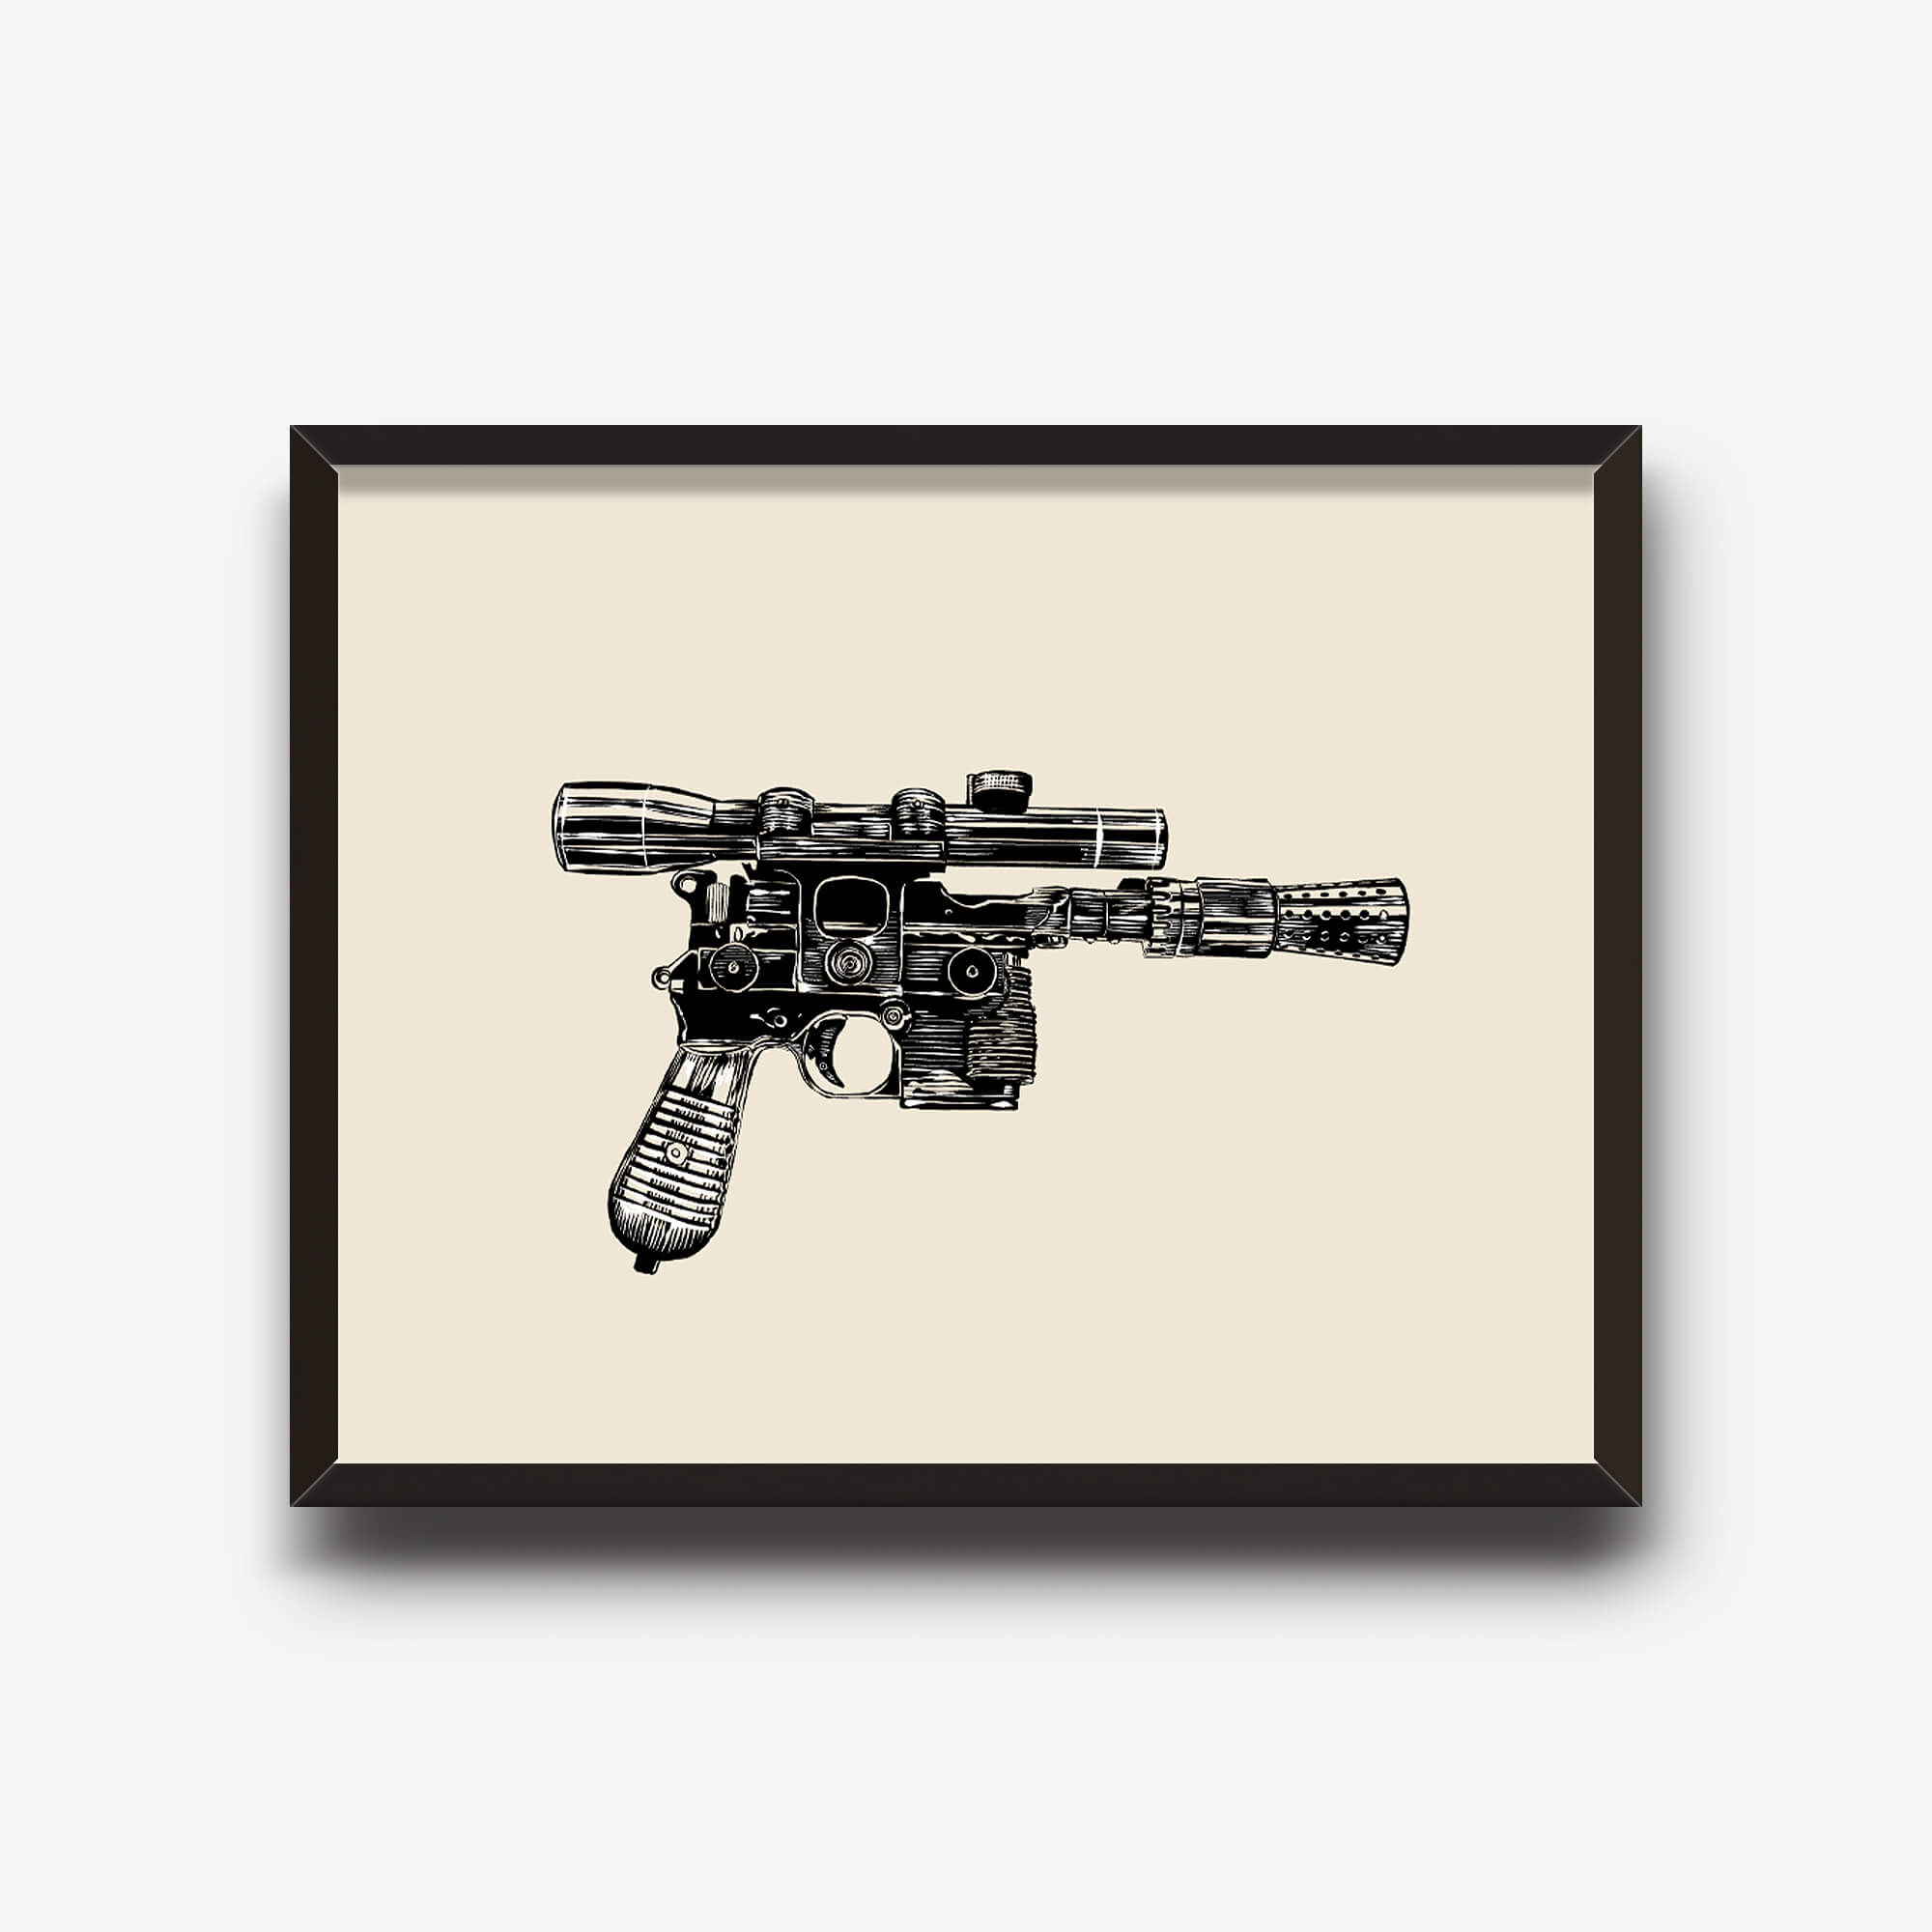 11x14 Scoundrel Blaster Art Print